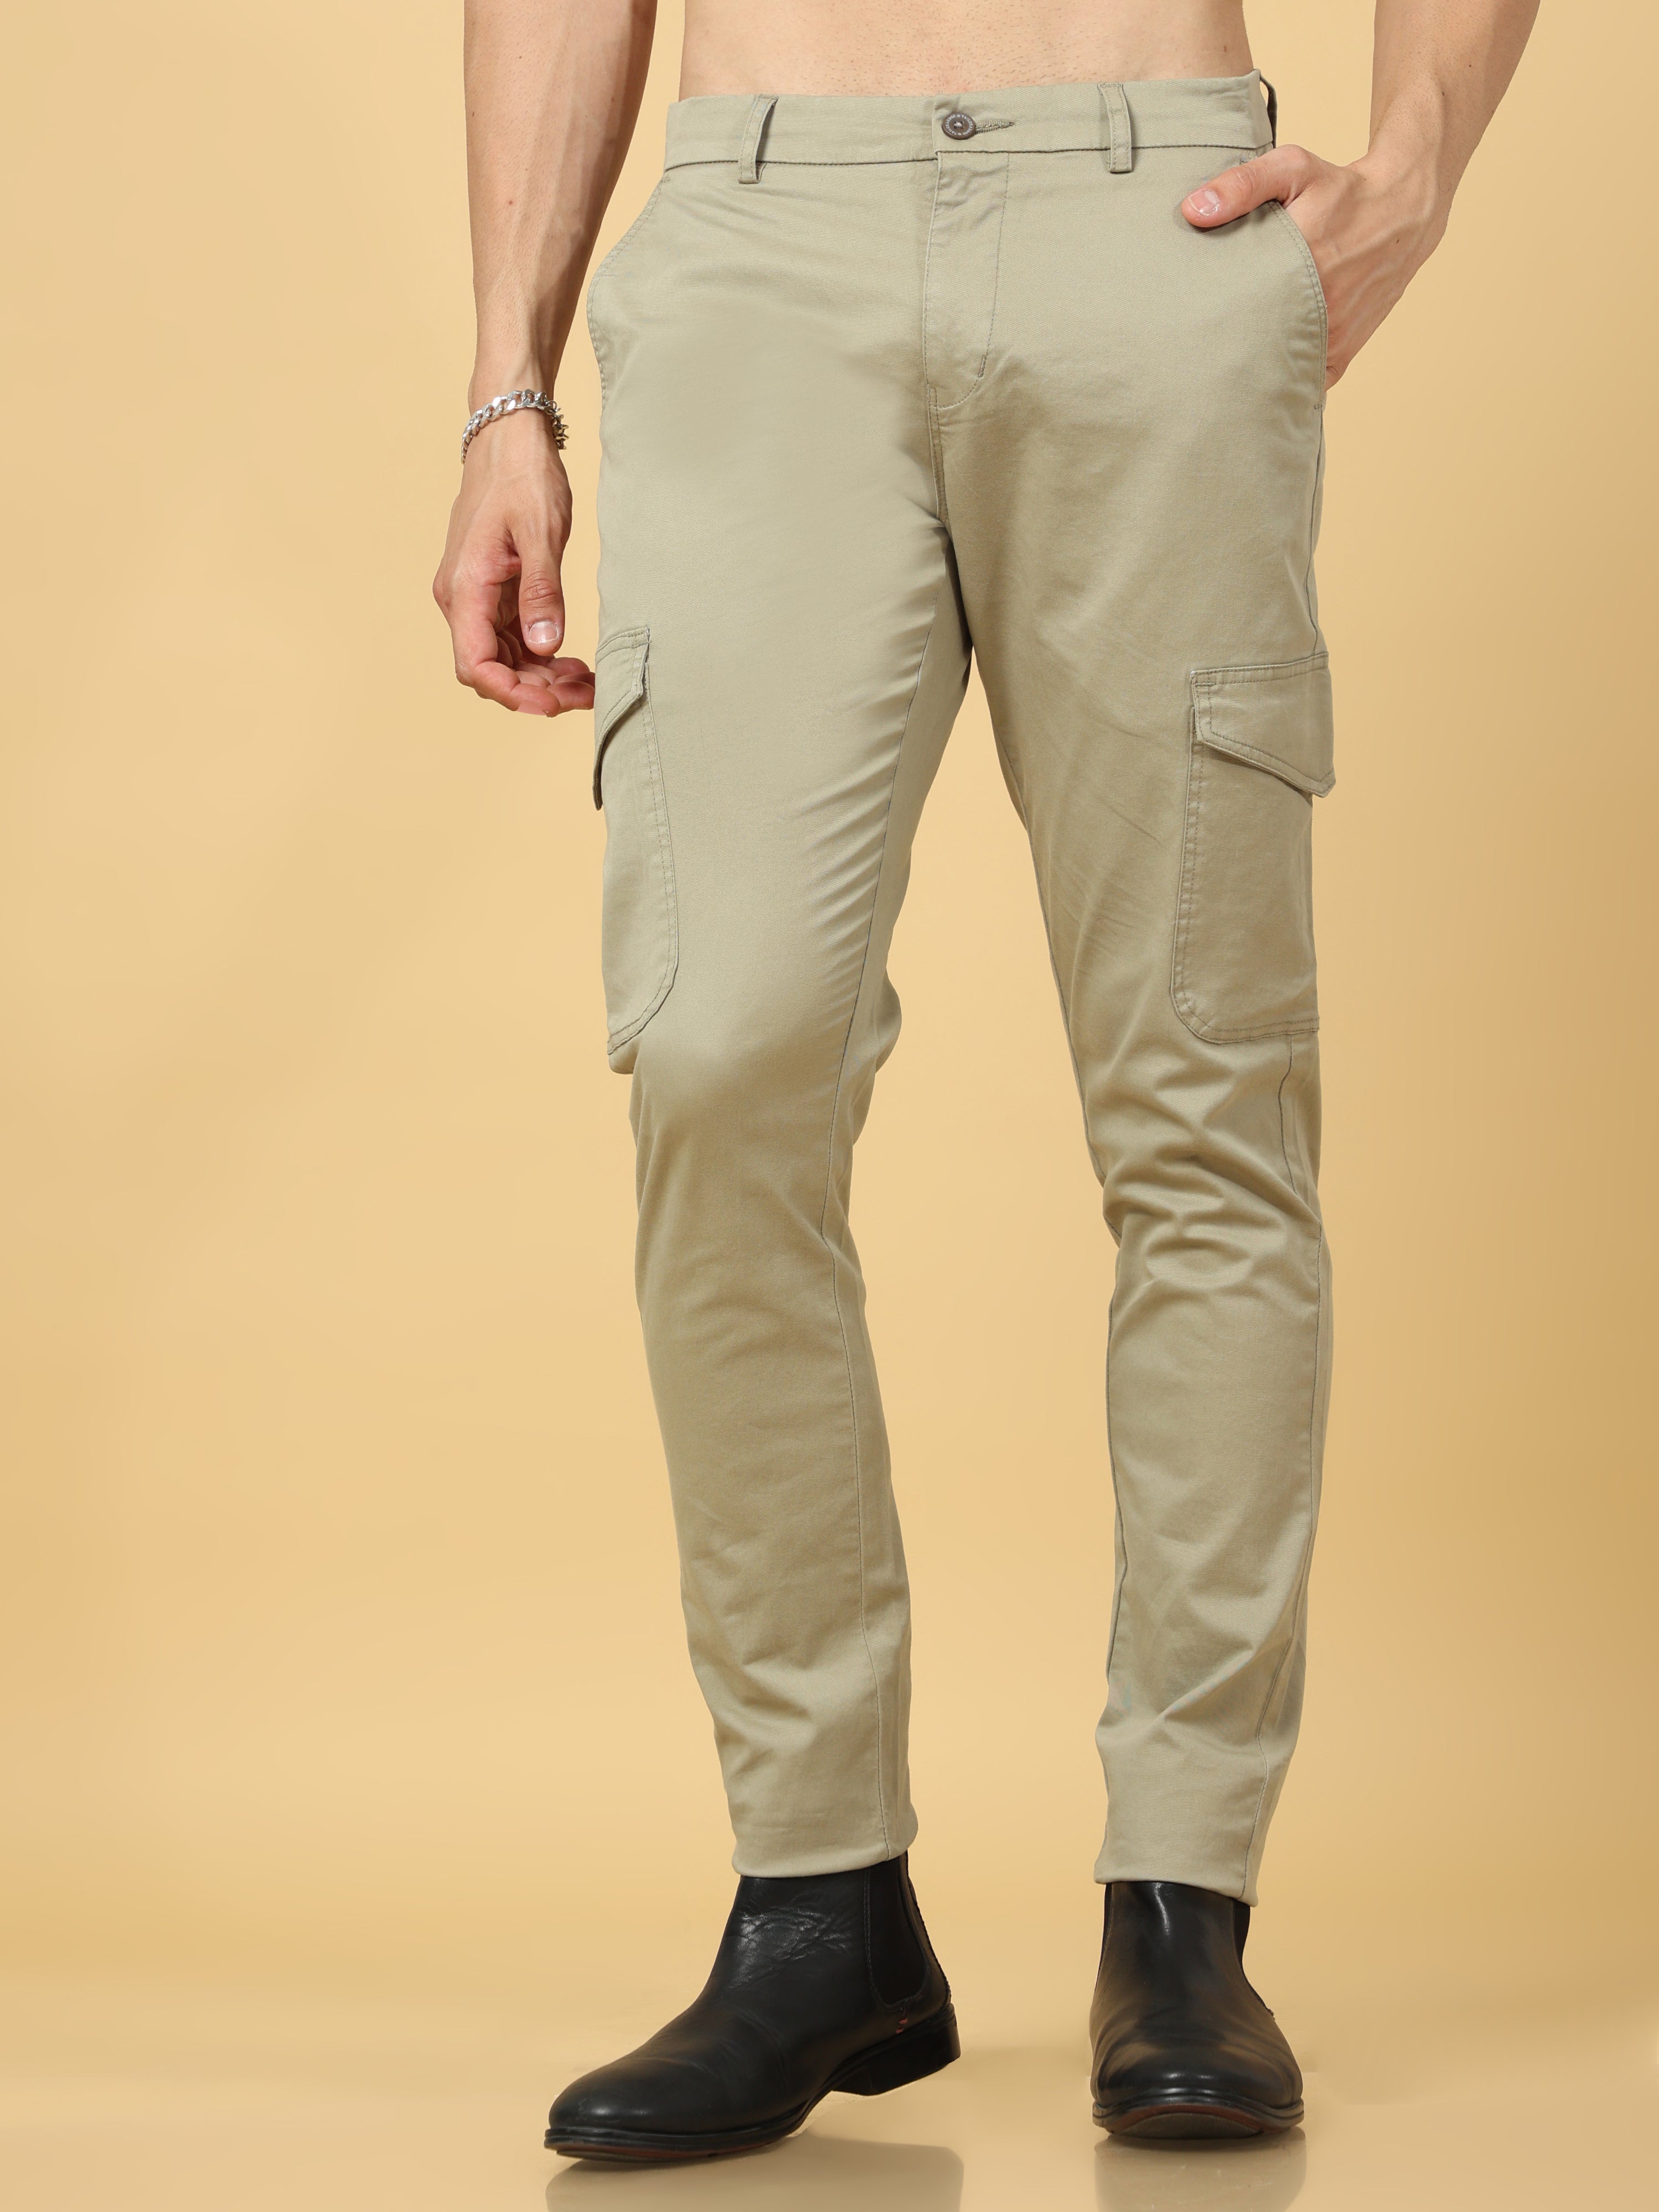 Cargo Pants Men's Cargo Pants Clothing Men's Pants Cotton Slim Fit Cargo  Slim Fit Training Pants, Pants Men Straight Pants (Color : Beige, Size : S)  : Amazon.co.uk: Fashion